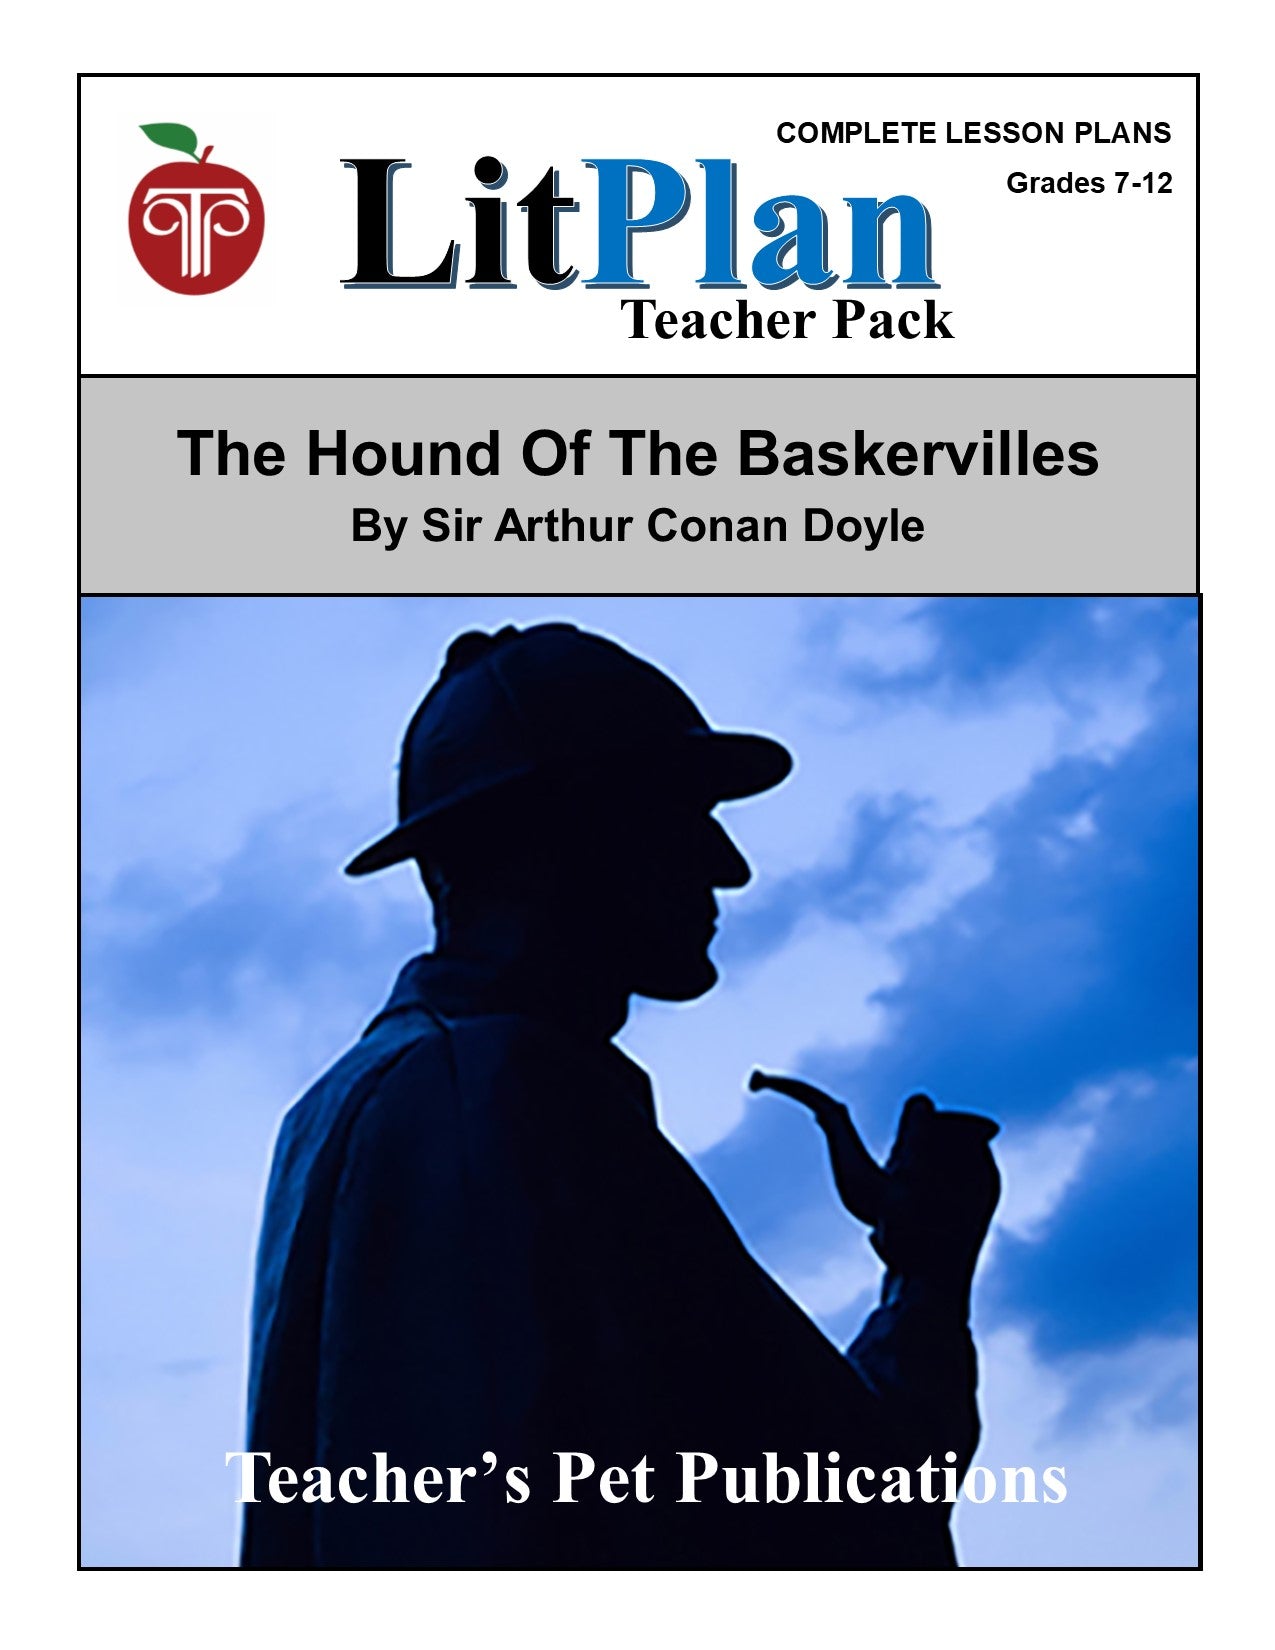 The Hound of Baskervilles: LitPlan Teacher Pack Grades 7-12